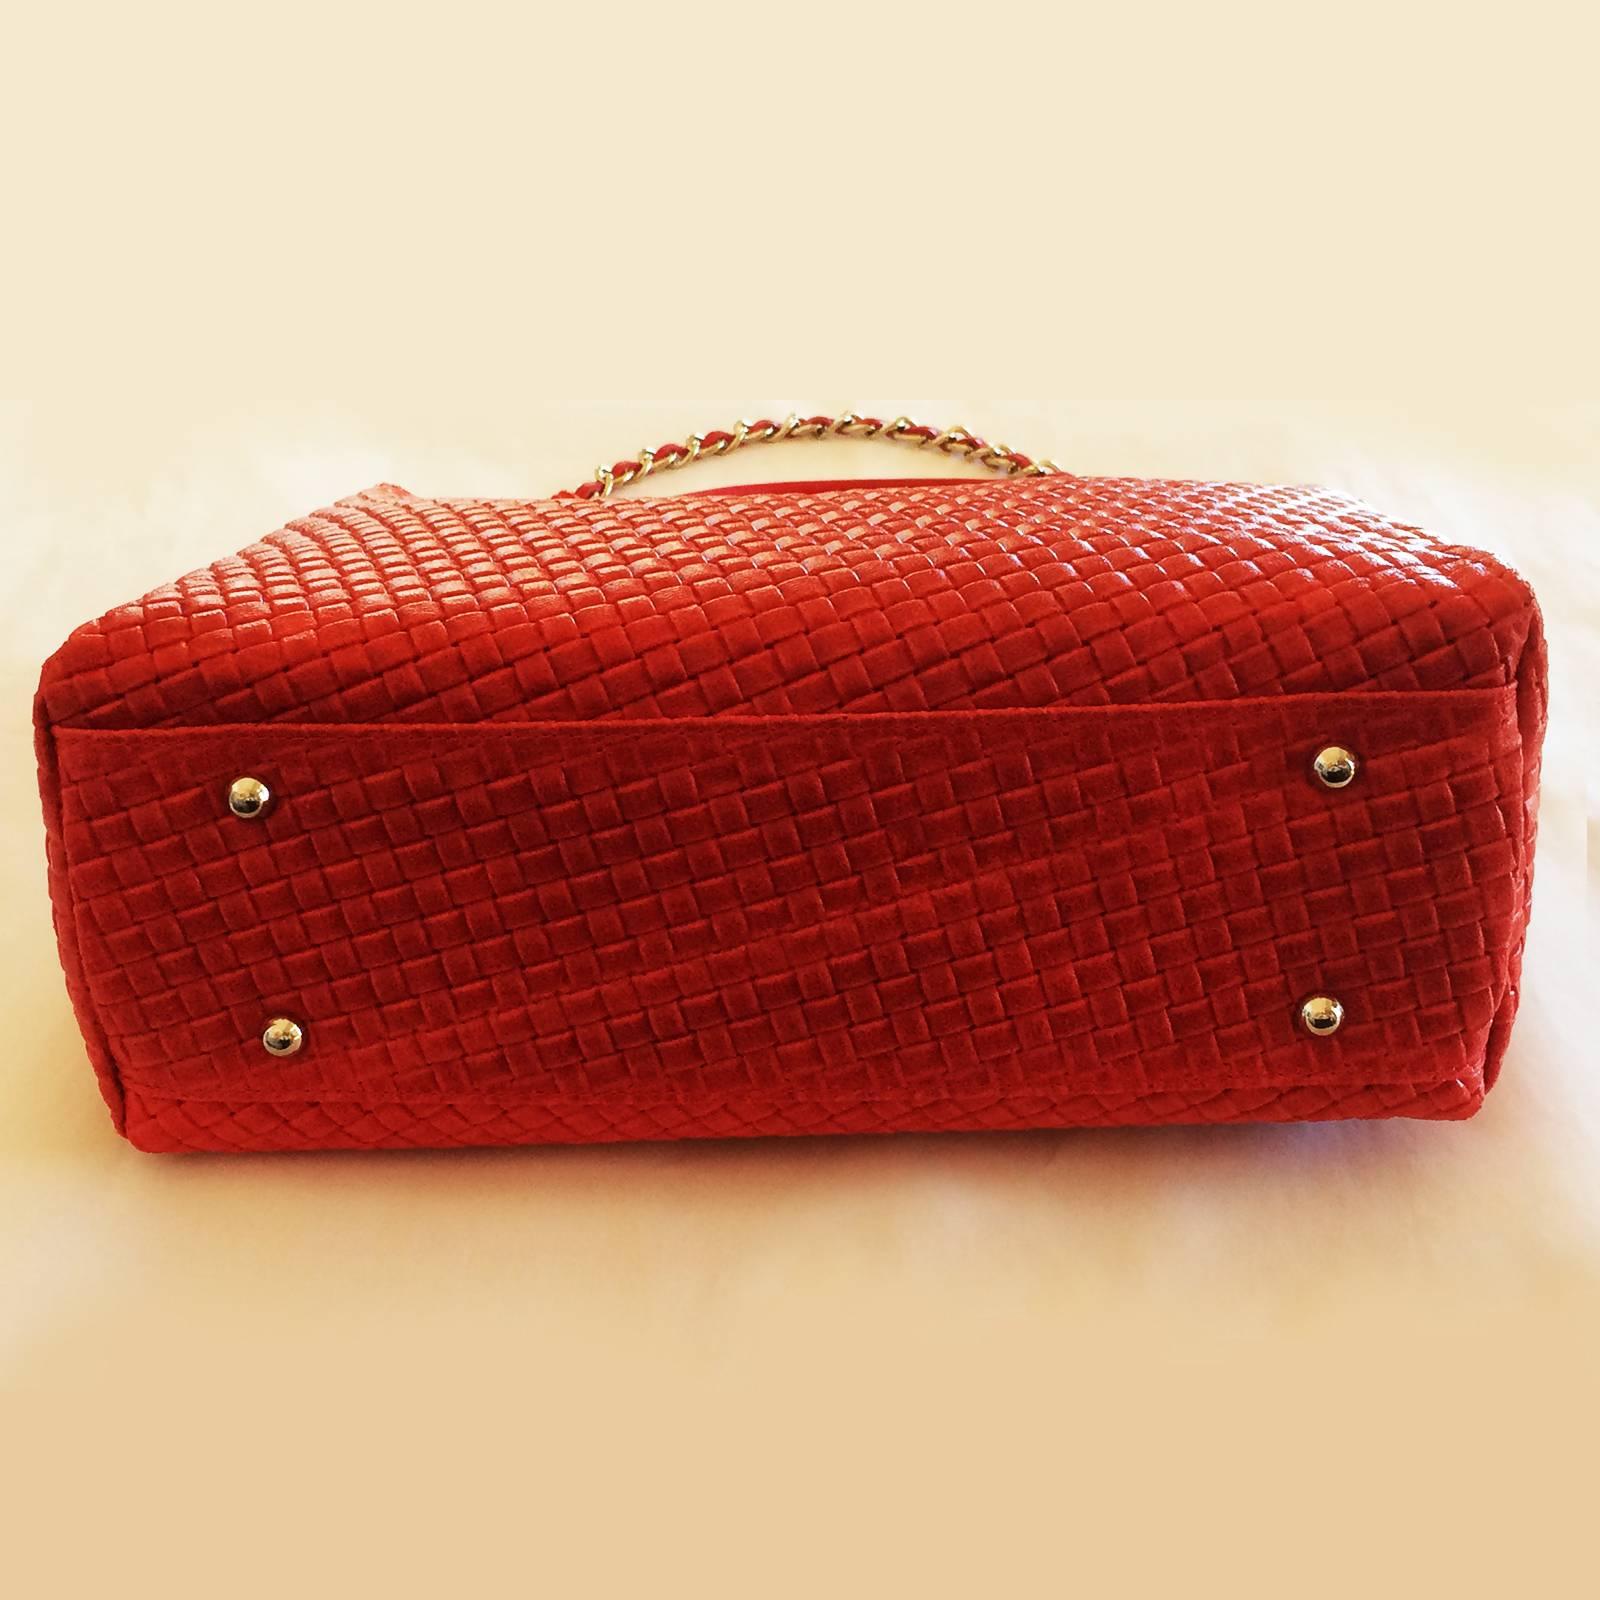 trussardi red bag